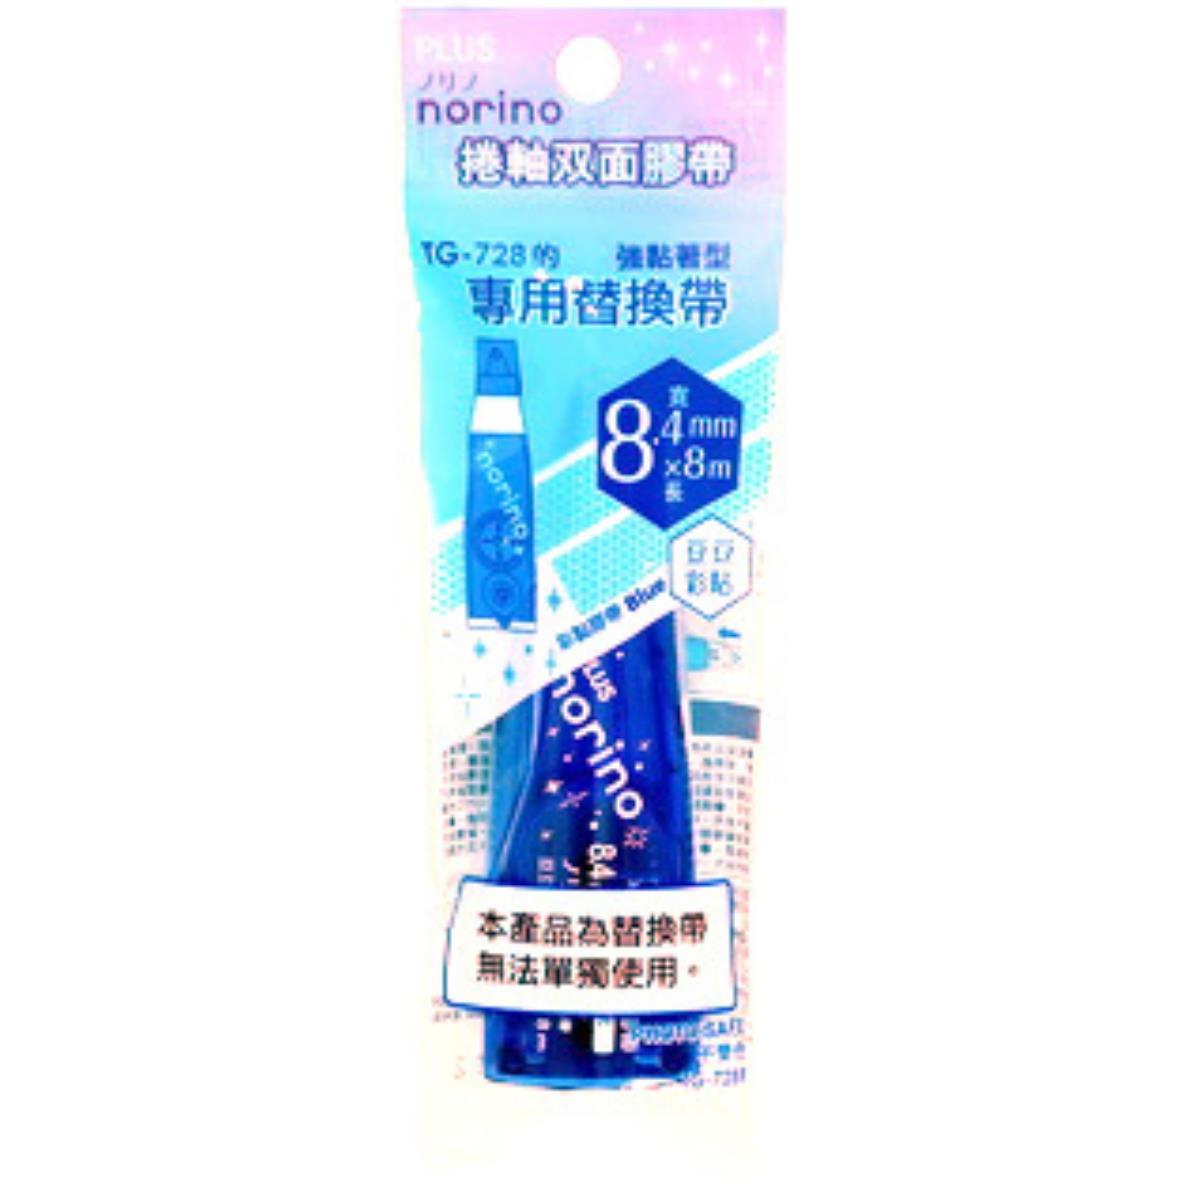 PLUS 豆豆彩貼替帶 (TTG-728R ) (藍)